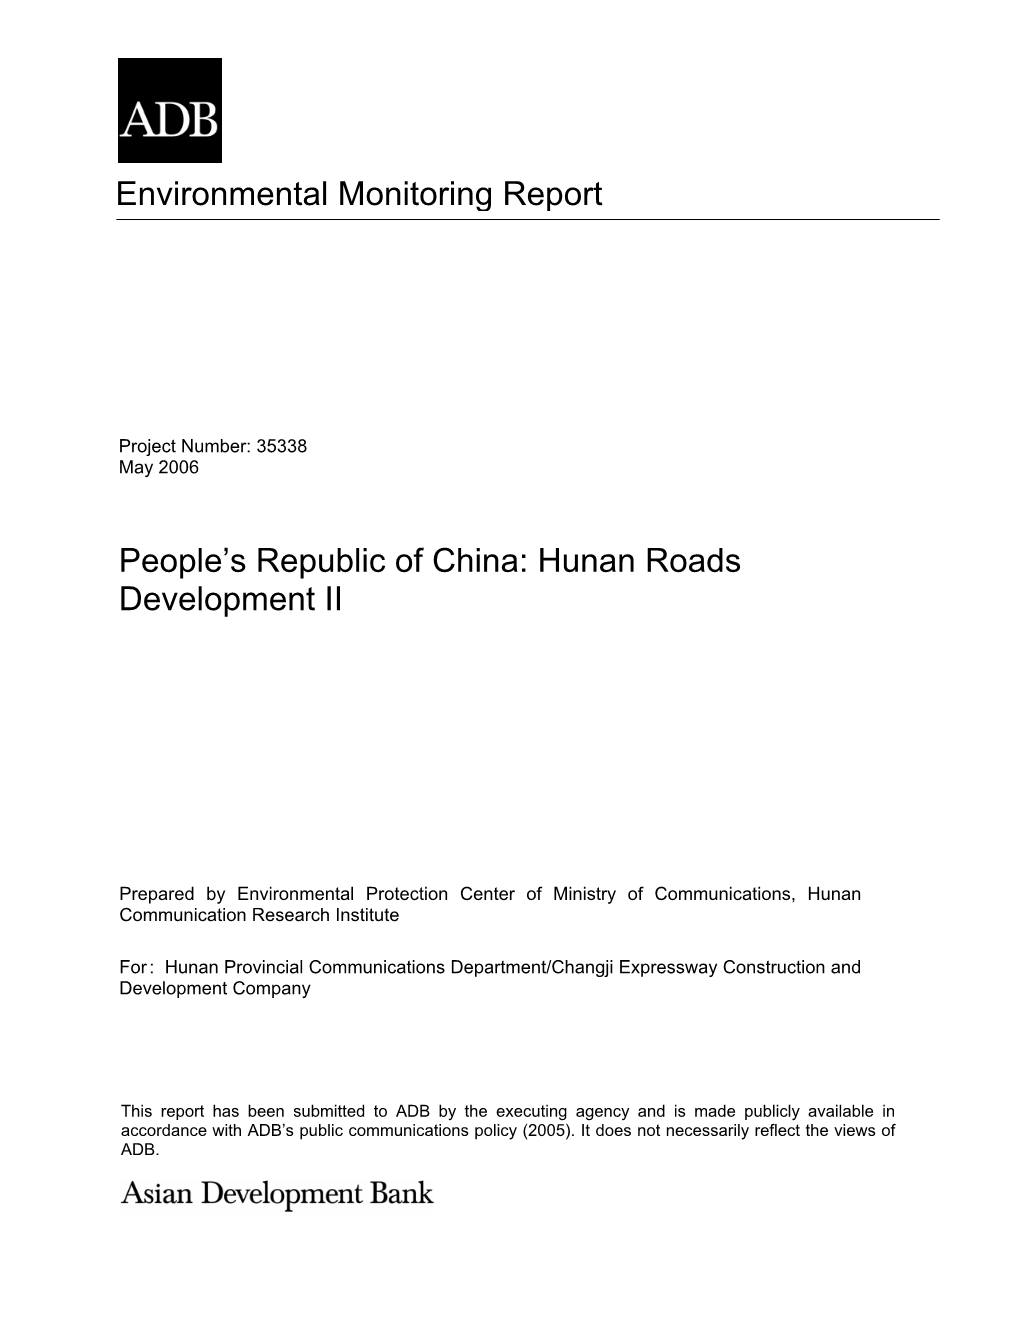 Environmental Monitoring Report People's Republic of China: Hunan